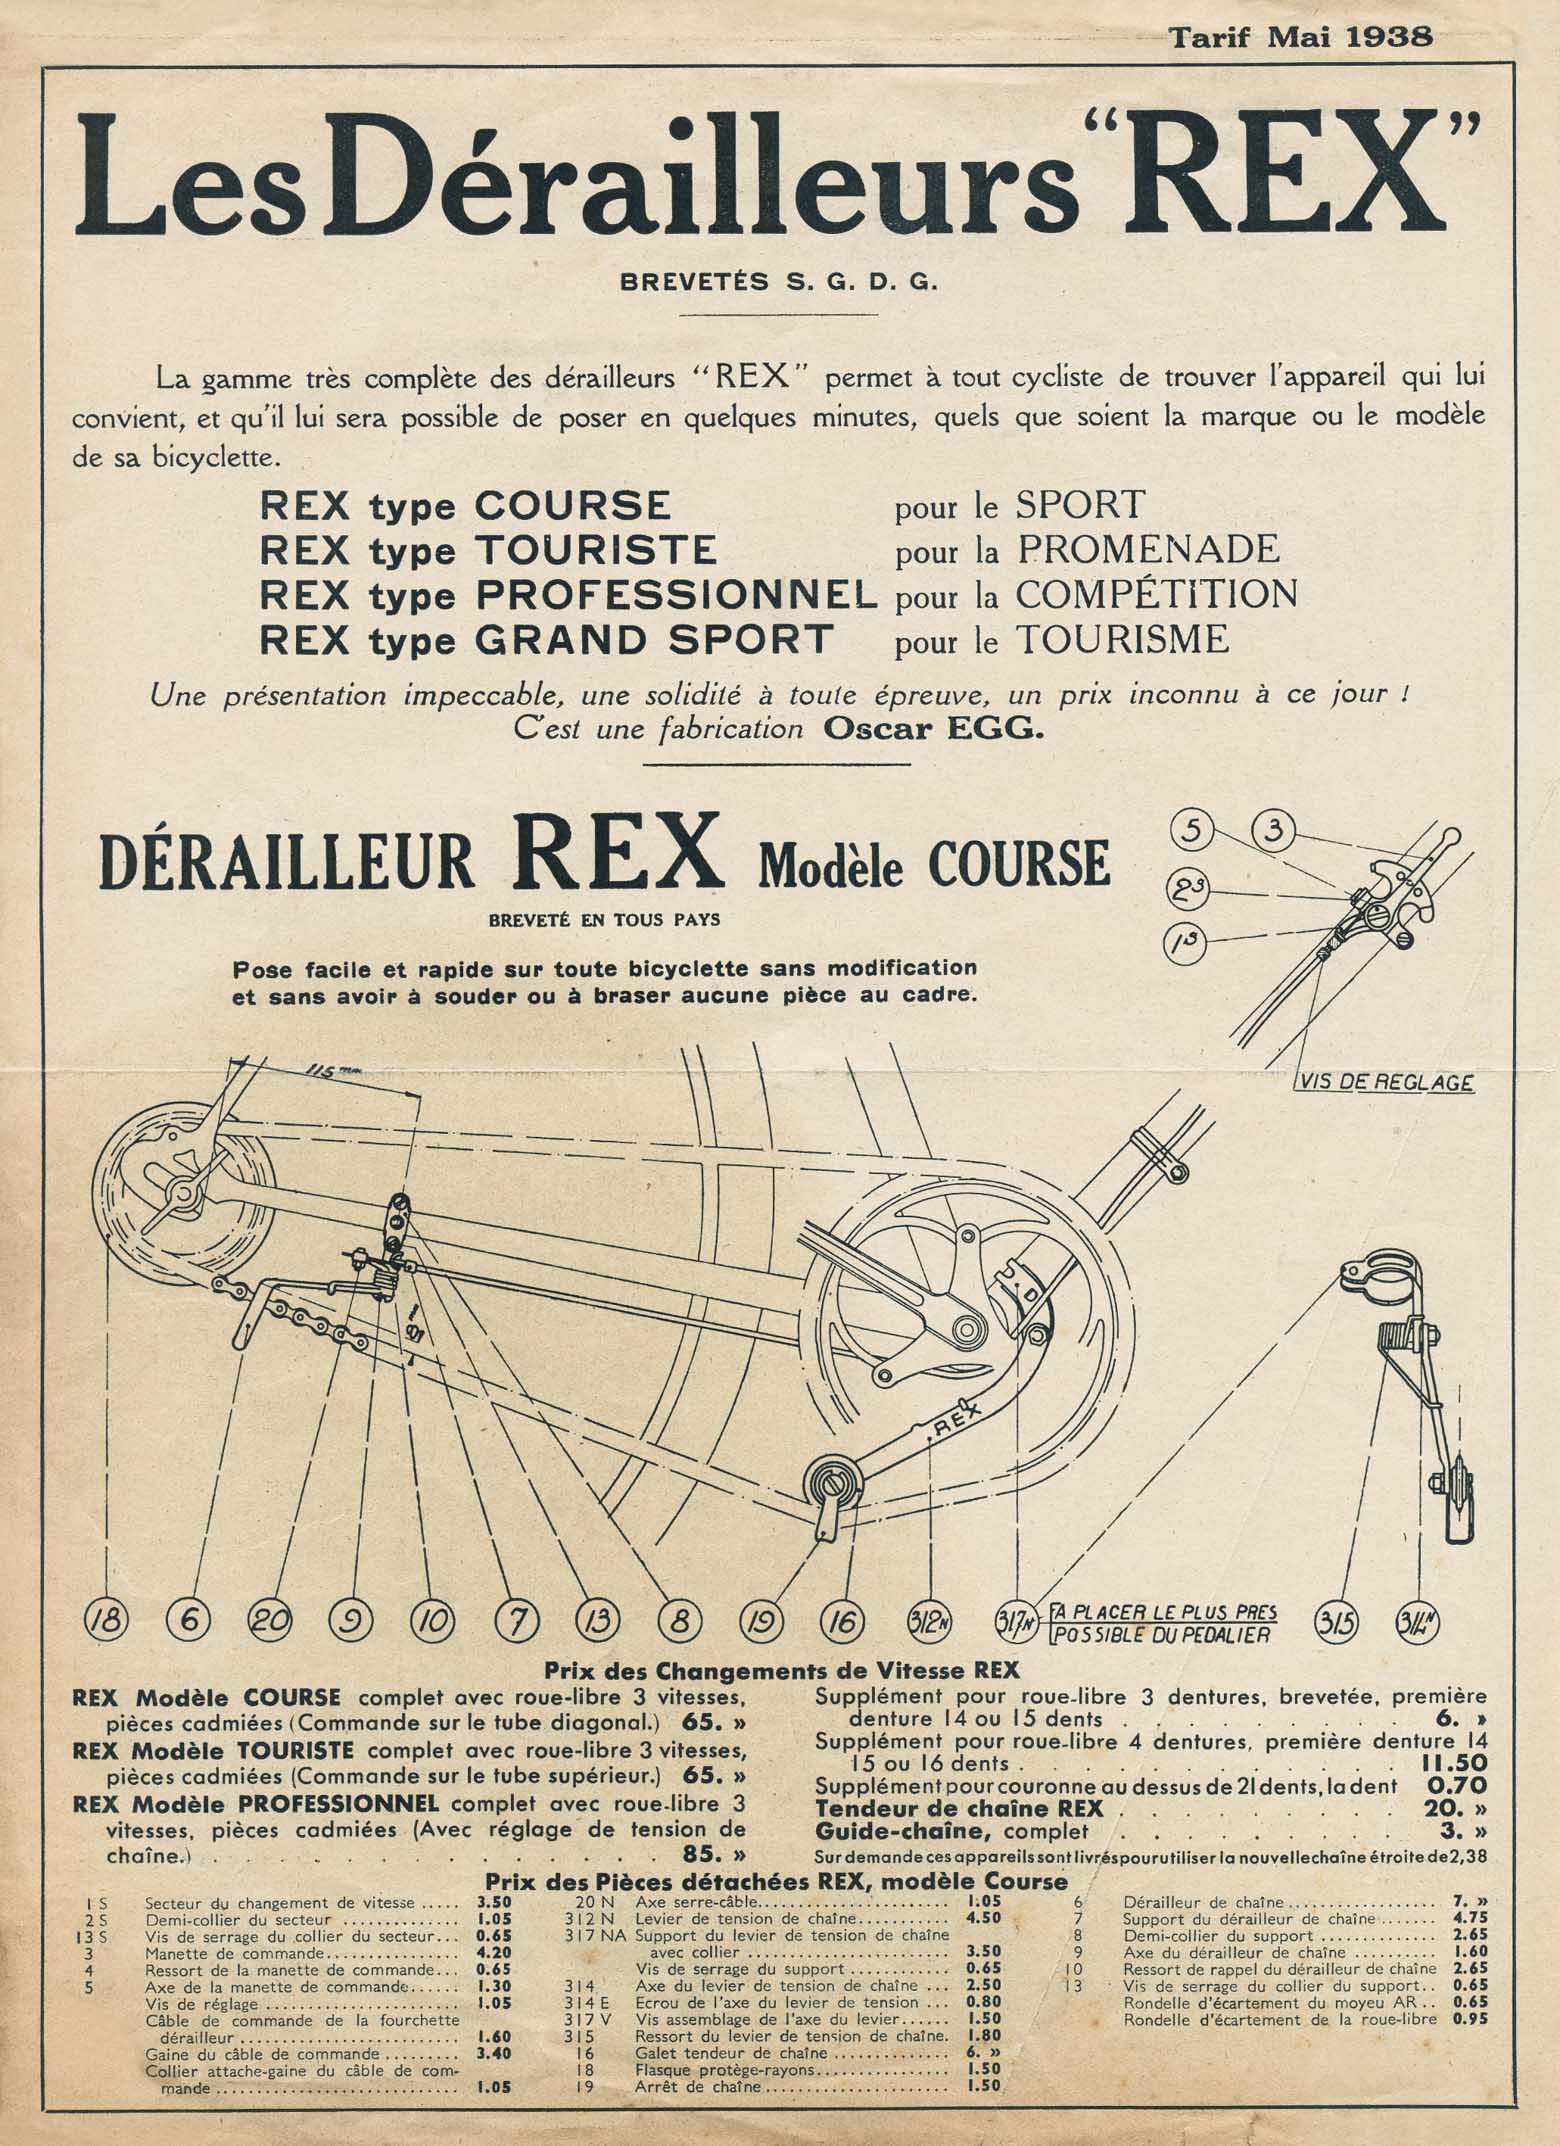 Les Derailleurs REX - 1938 scan 01 main image